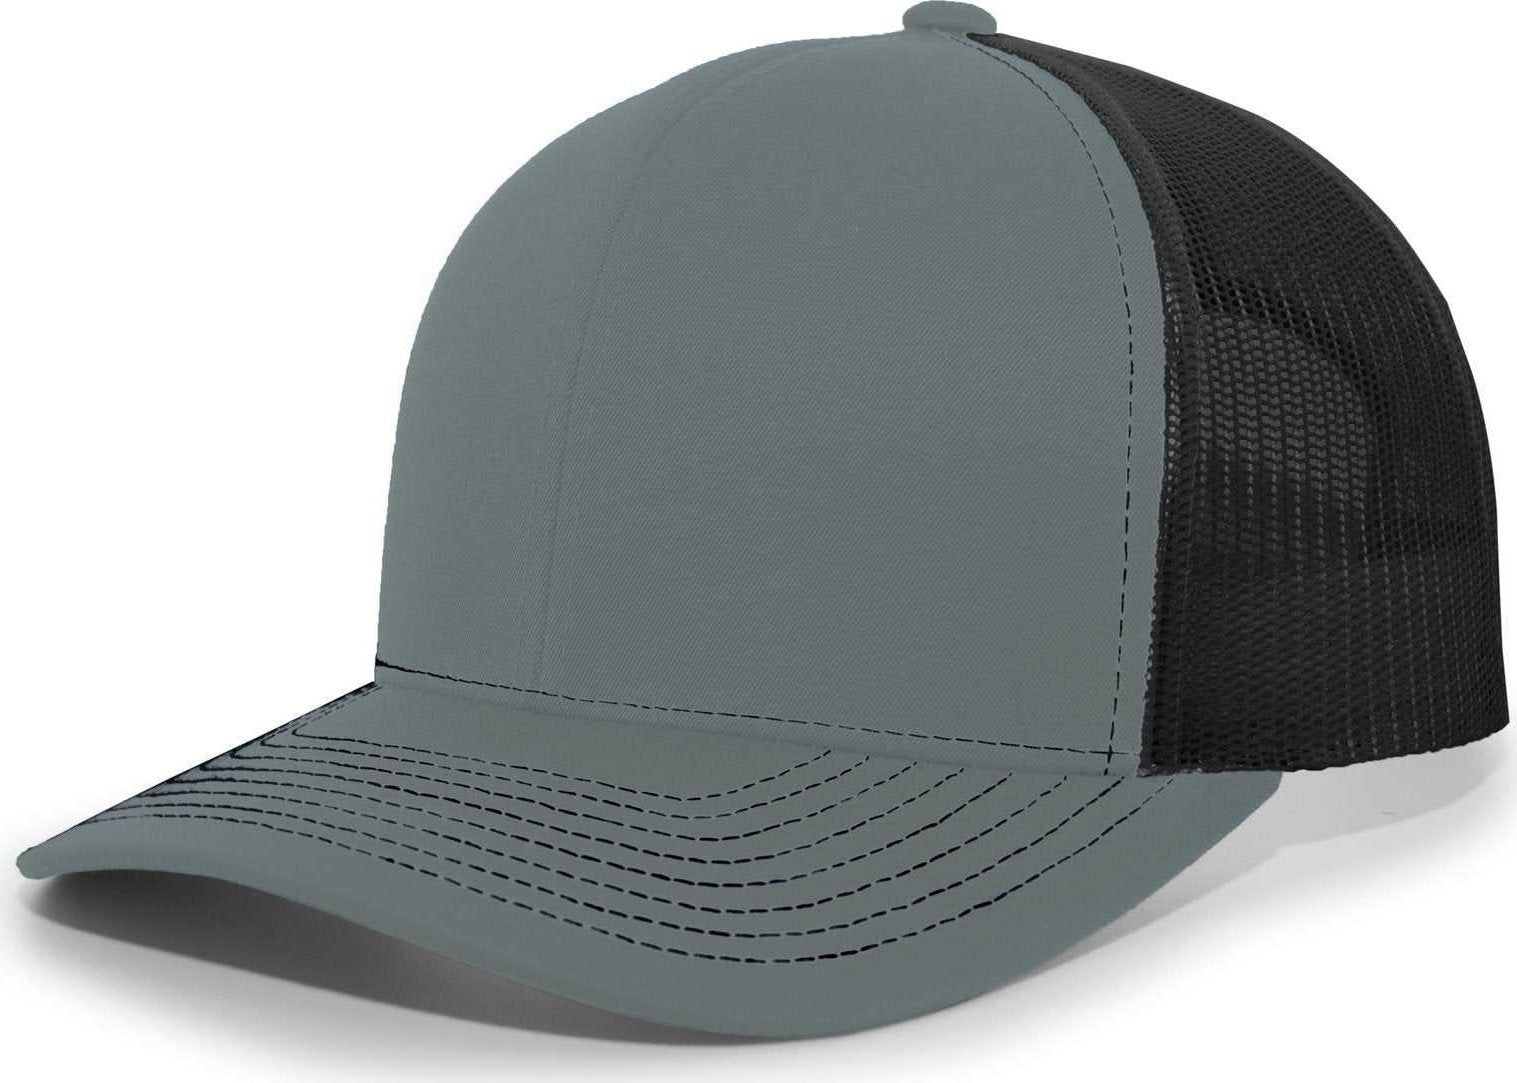 Pacific Headwear 104S Contrast Stitch Snapback Trucker Cap - Graphite Black Graphite - HIT a Double